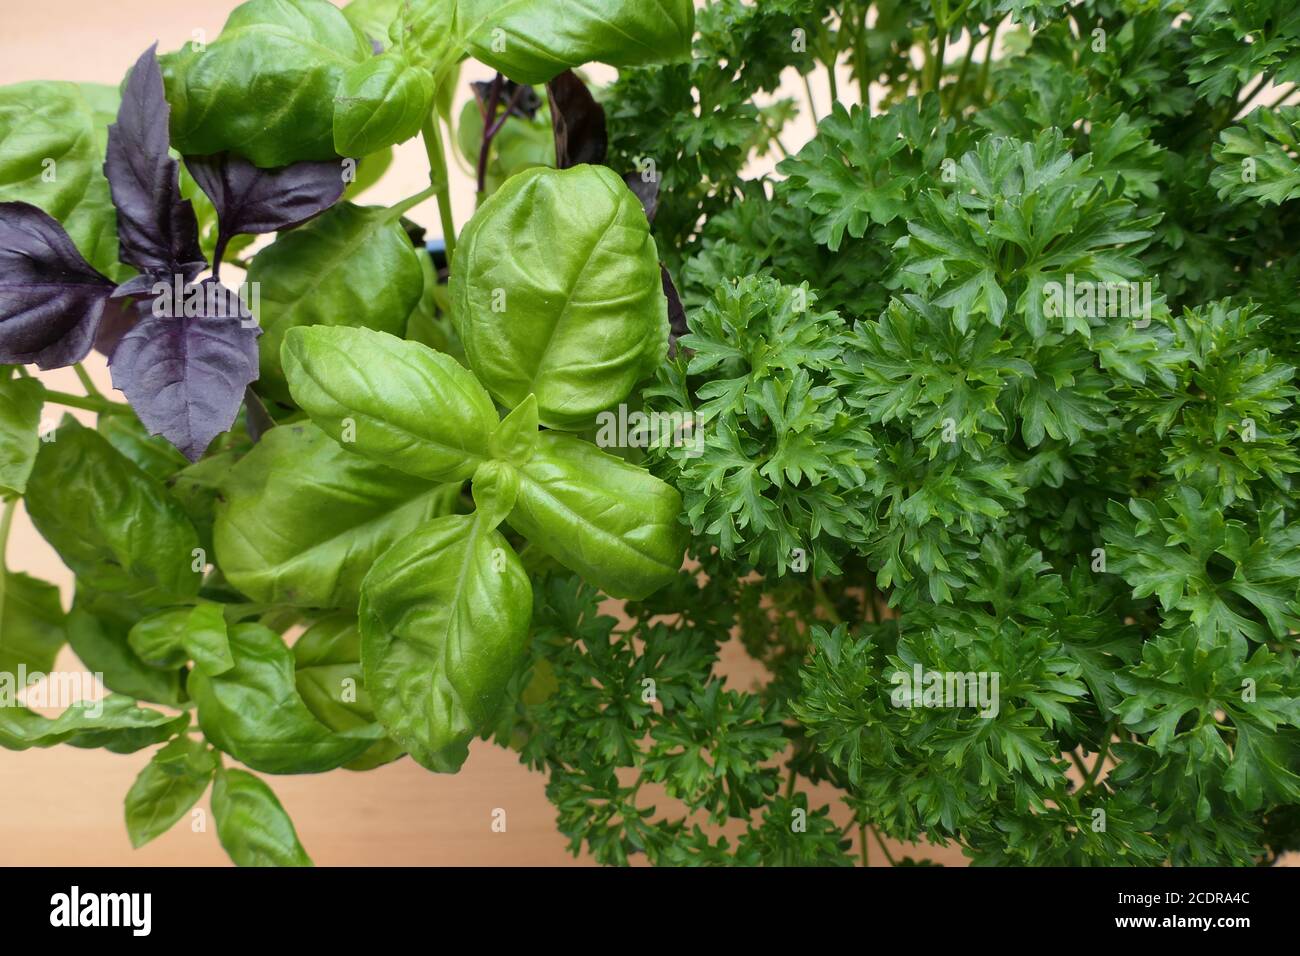 Piante aromatiche fresche ed erbe aromatiche: basilico di rubin rosso, prezzemolo e basilico verde Foto Stock